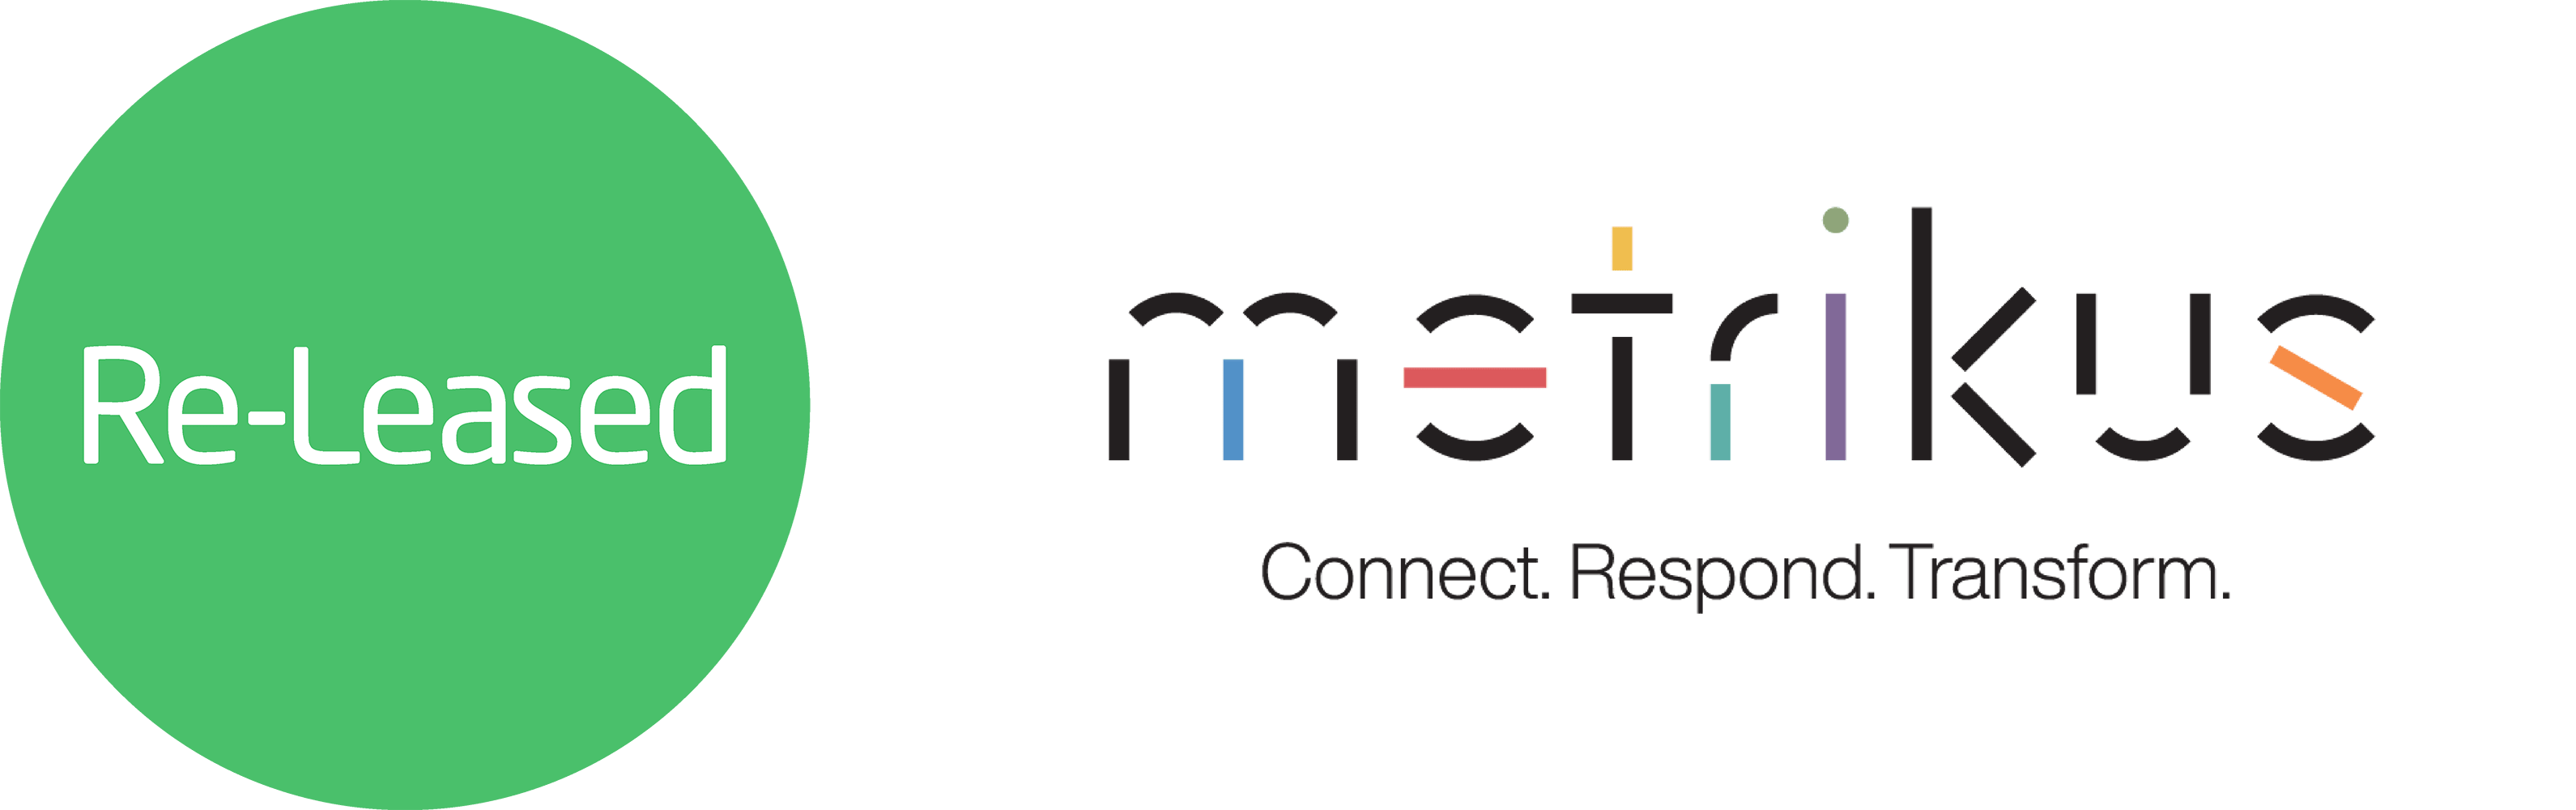 re-leased-metrikus-logos